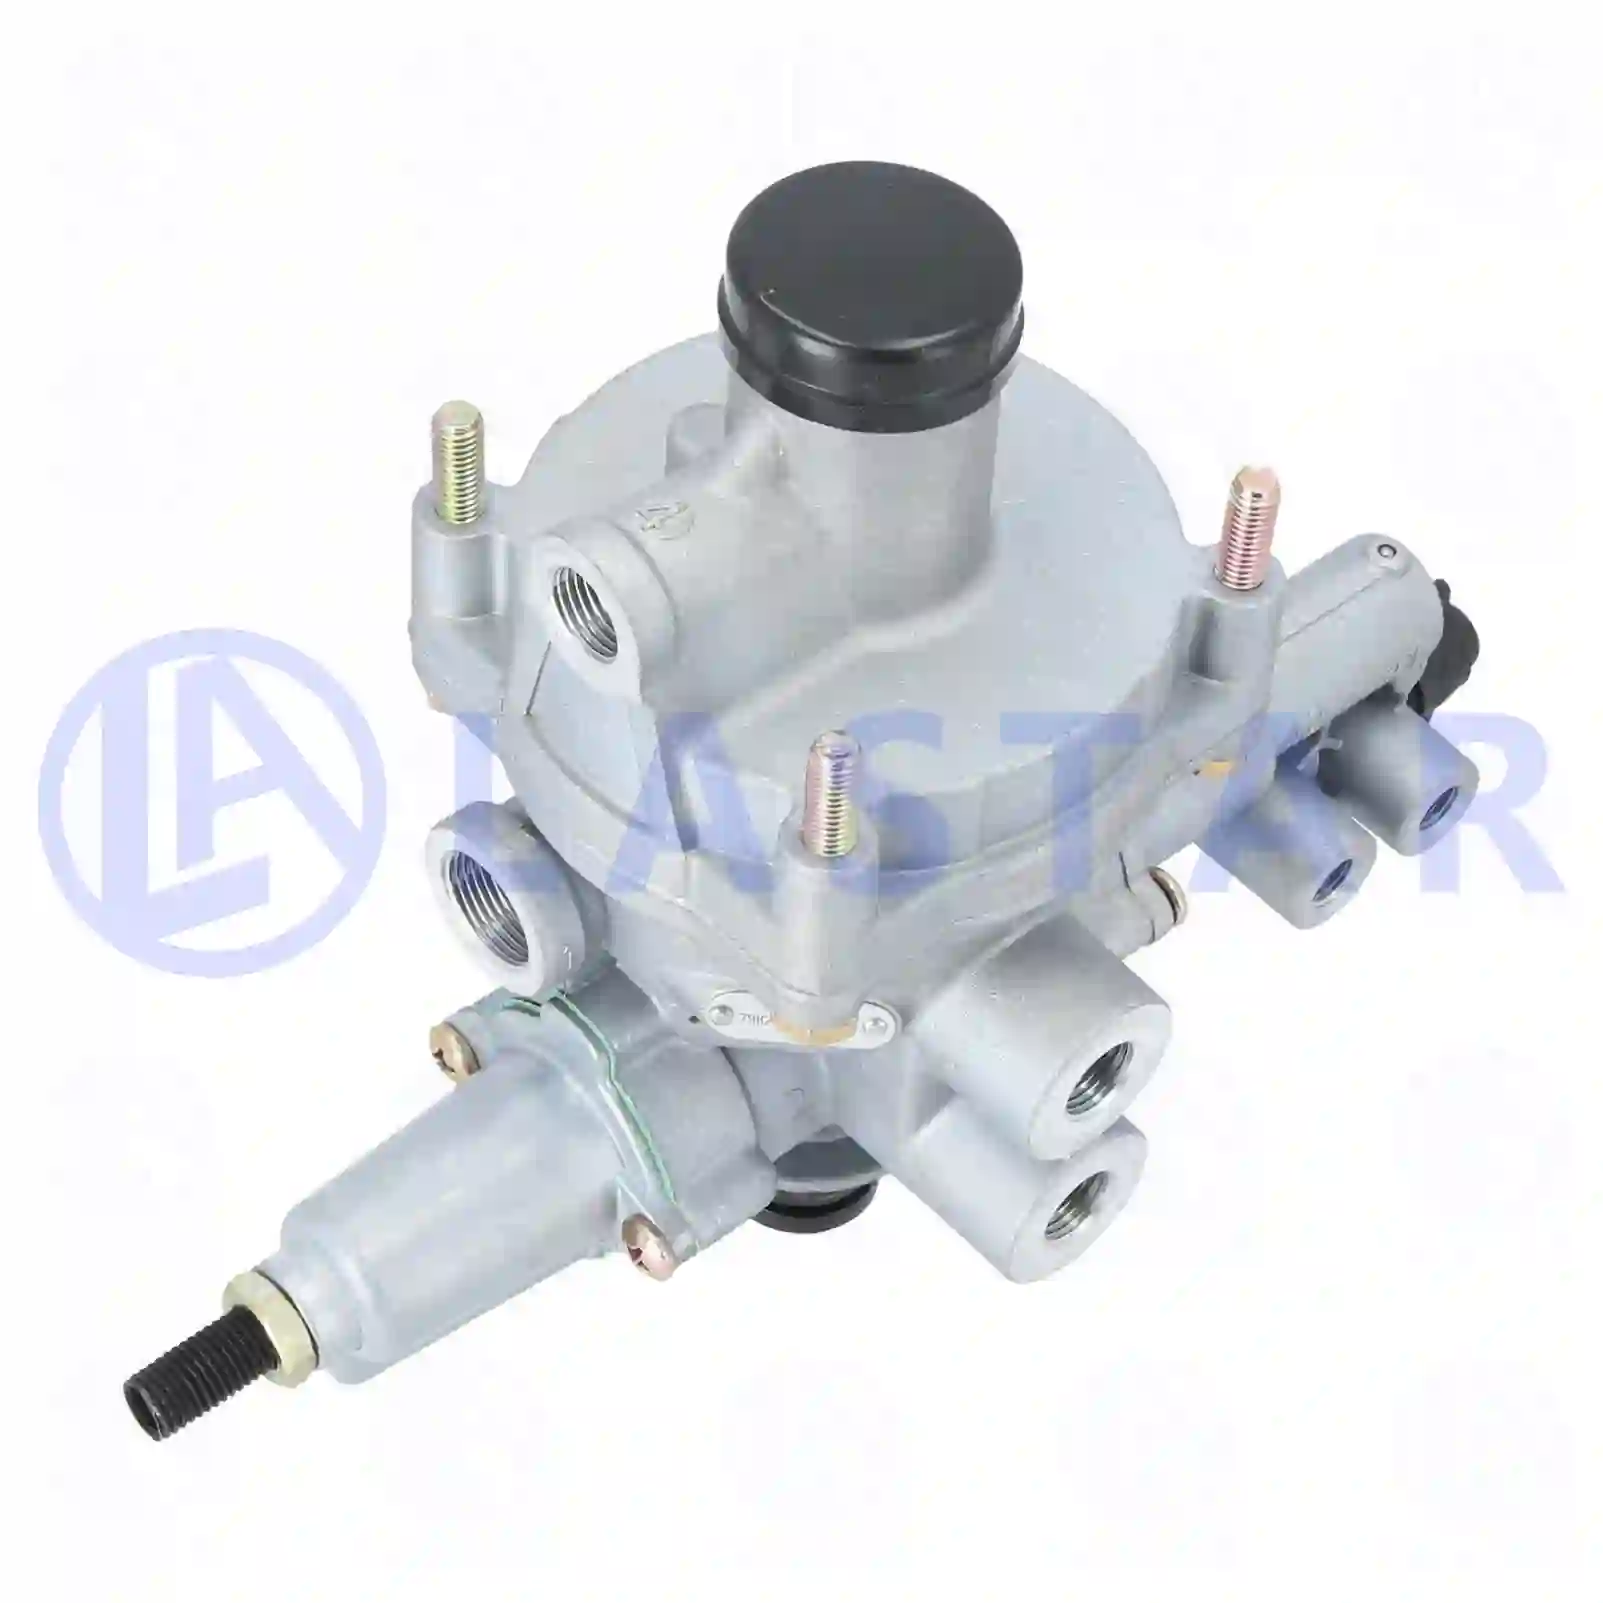  Load sensitive valve || Lastar Spare Part | Truck Spare Parts, Auotomotive Spare Parts